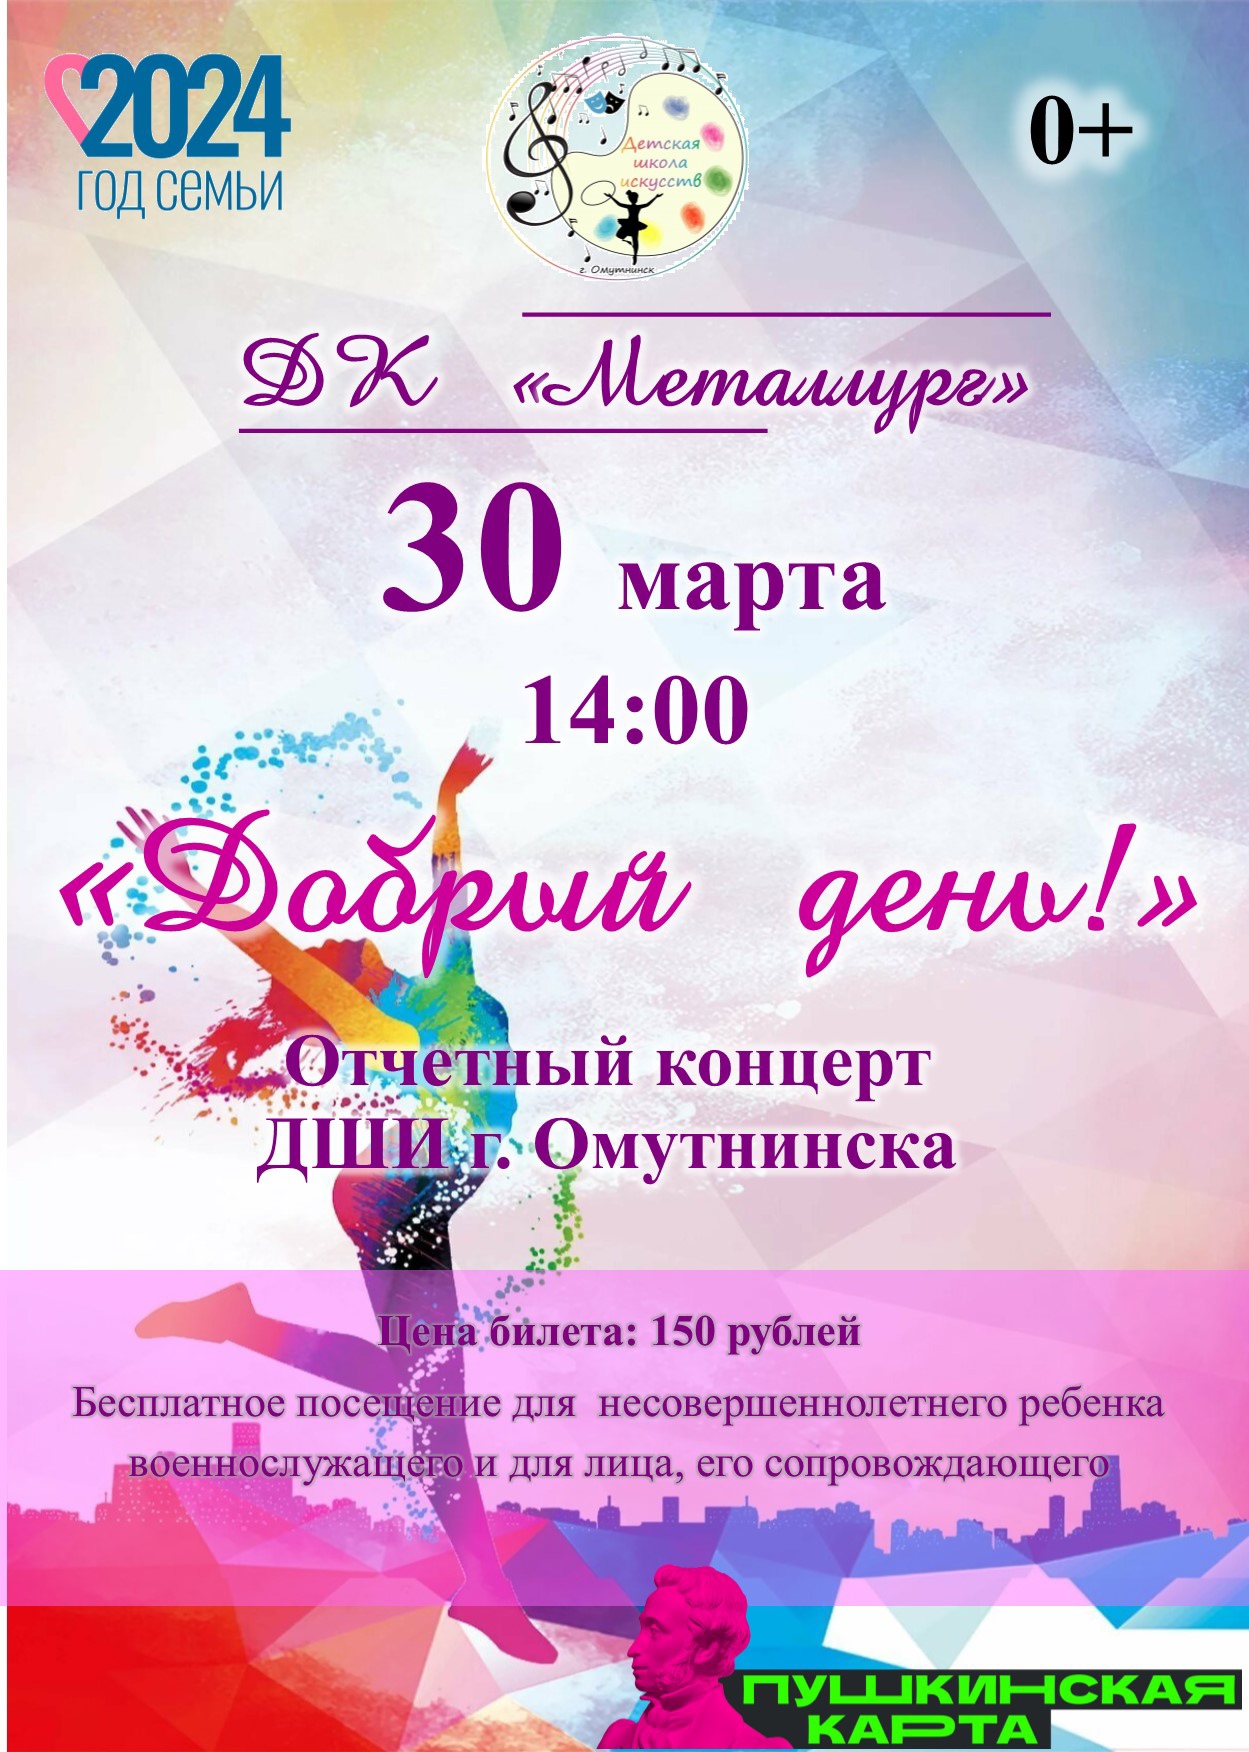 Отчетный концерт ДШИ г. Омутнинска «Добрый день!» (0+).